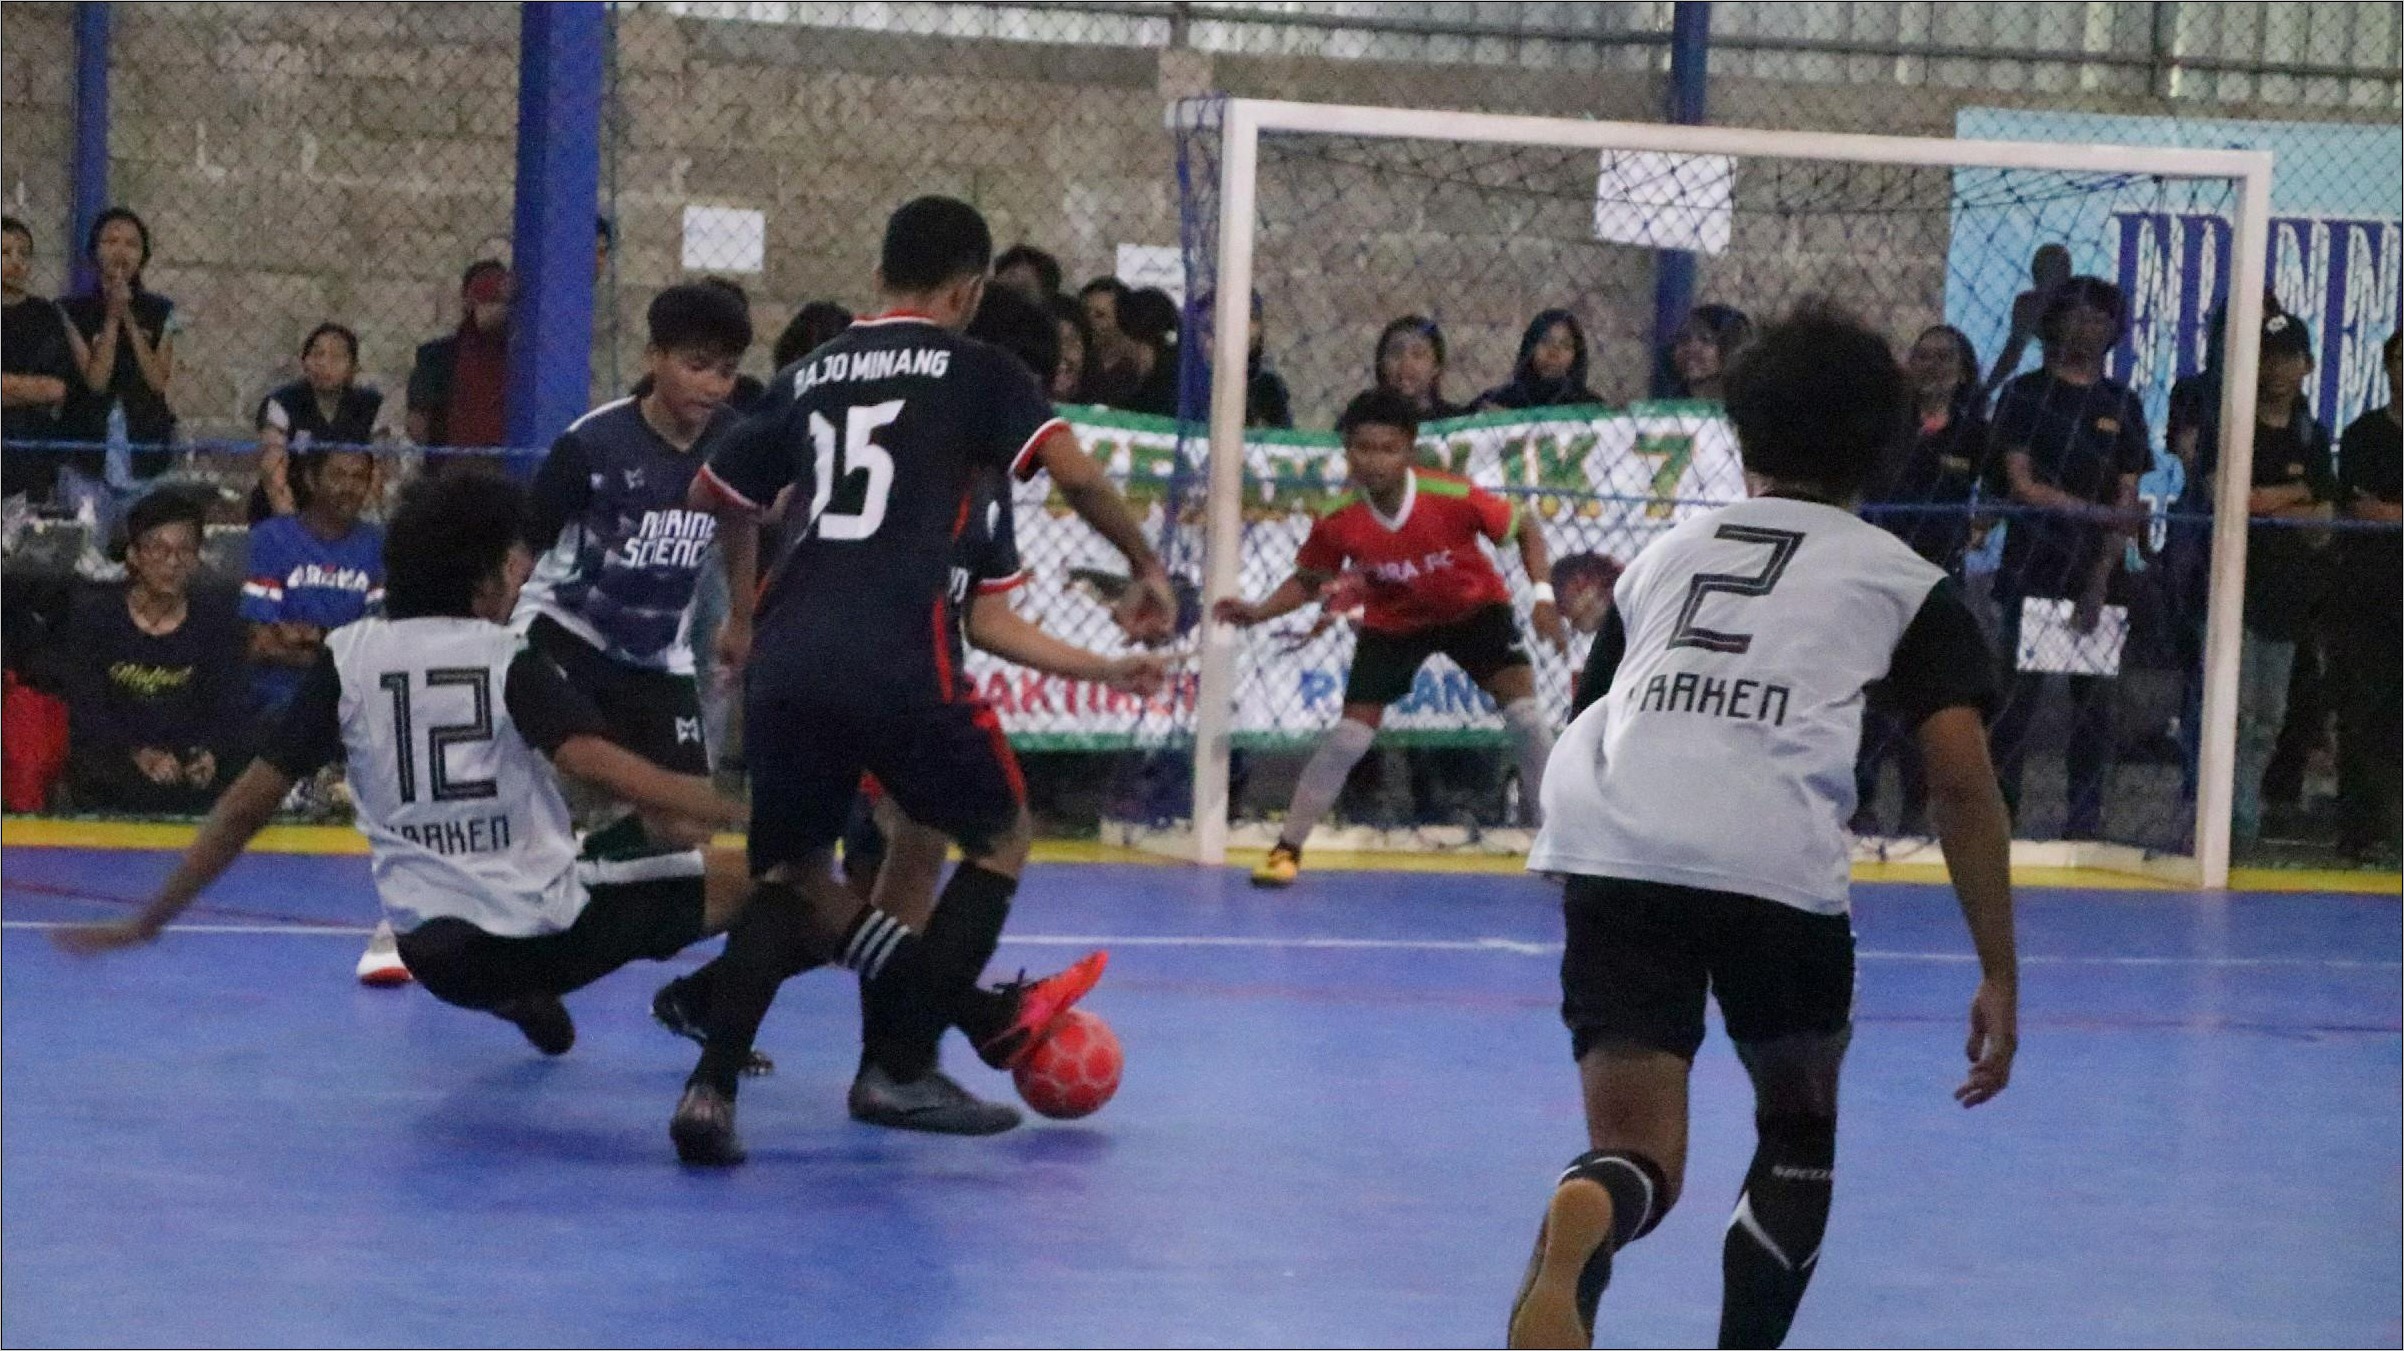 Contoh Surat Izin Bermain Futsal Ke Pada Sekolah